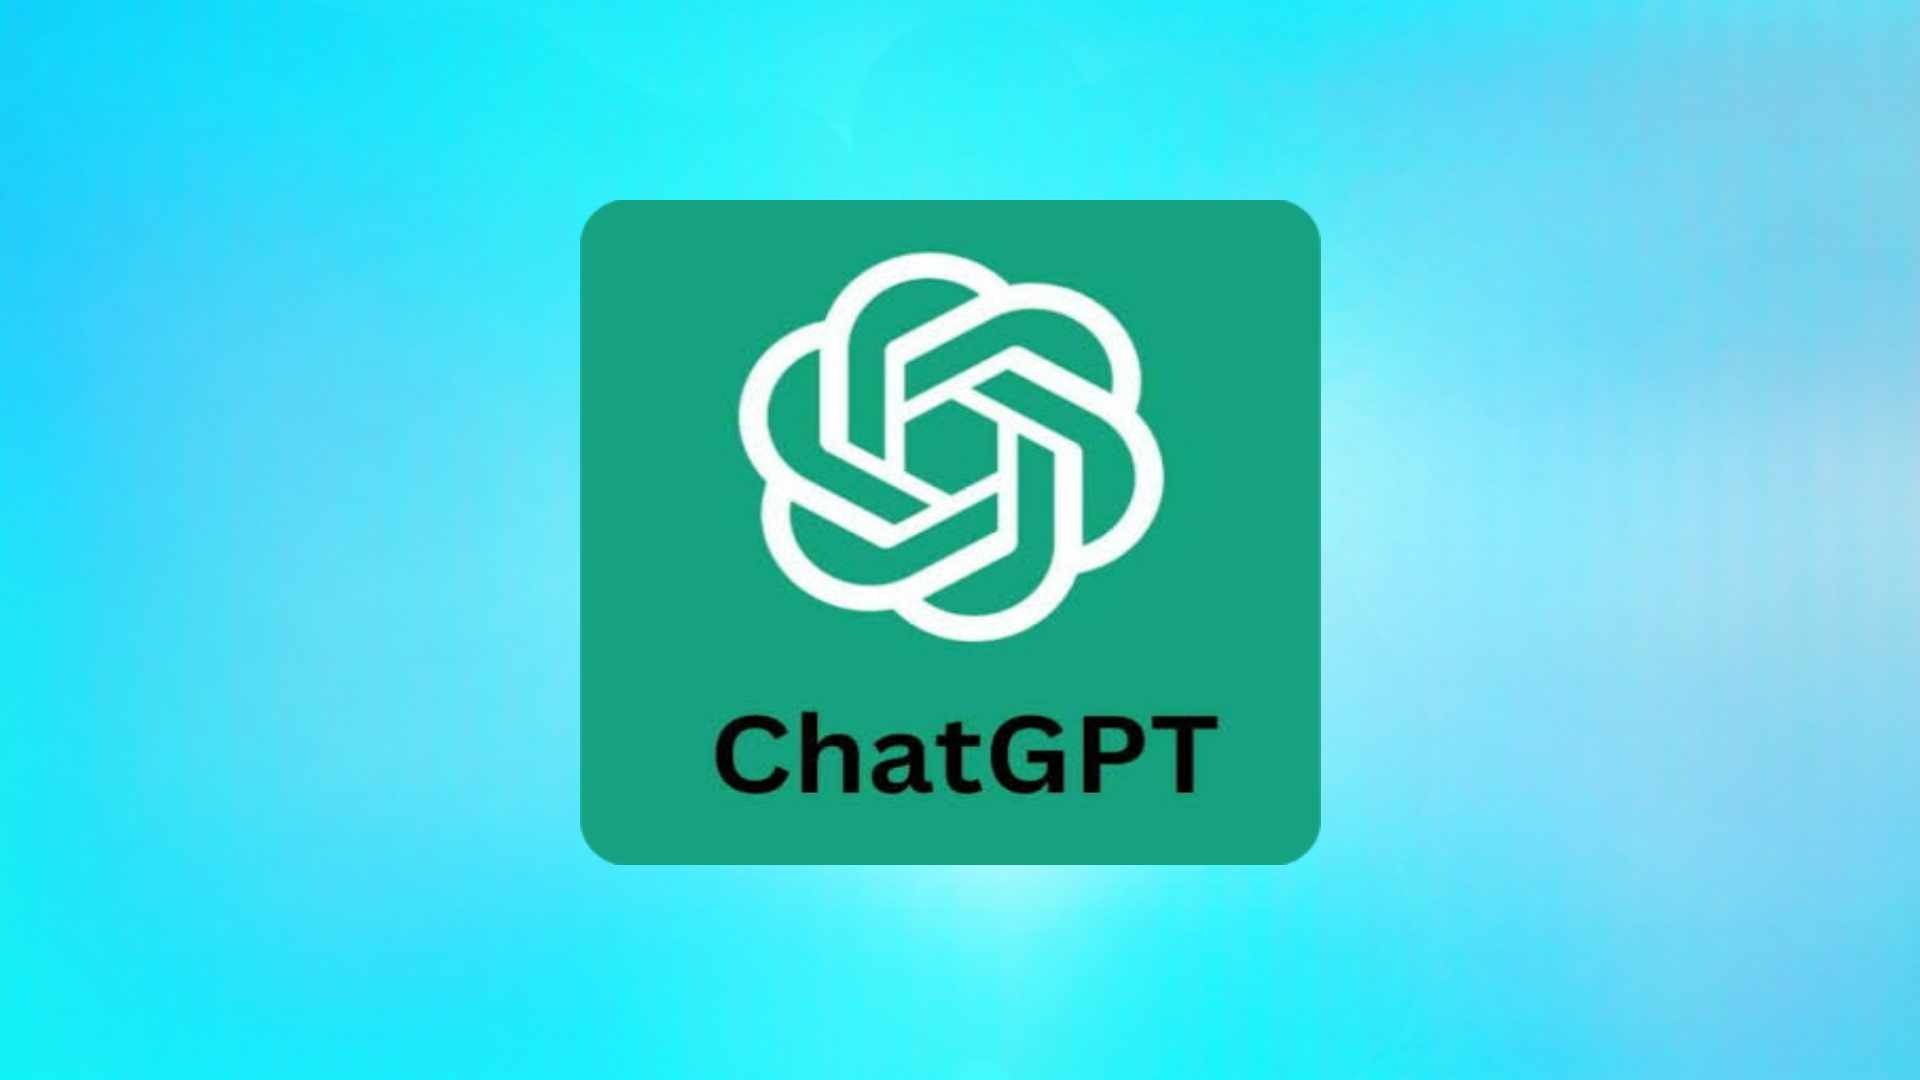 איך להשיג ChatGPT בחינם - שלבי הרשמה וכיצד להשתמש בו